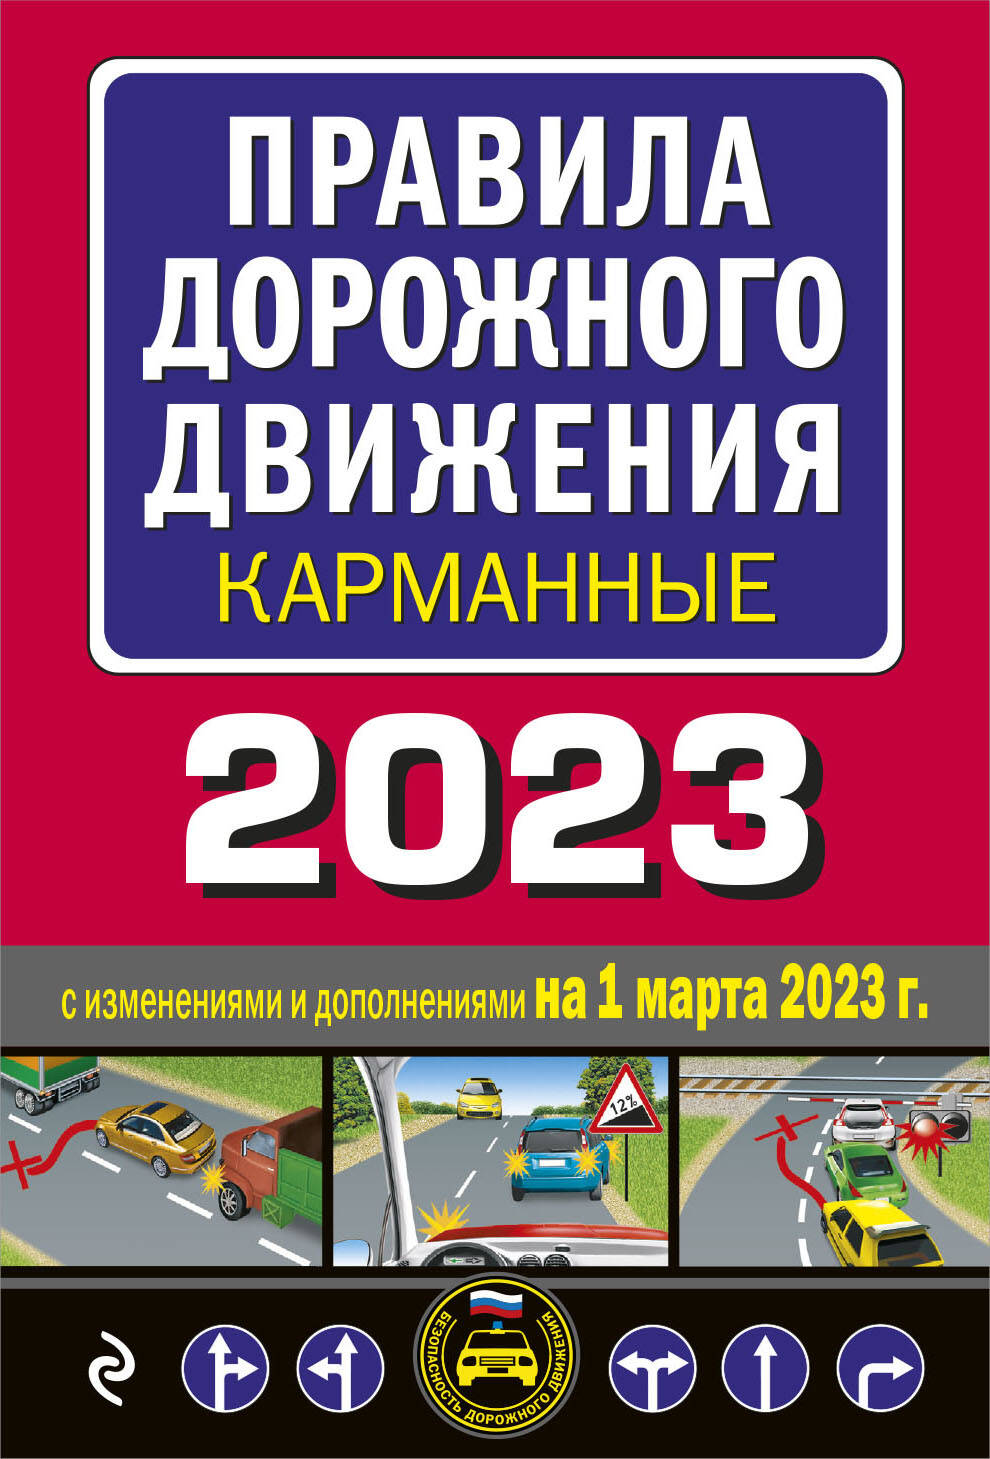 Правила дорожного движения карманные 2023: с изменениями и дополнениями на 1 марта 2023 года